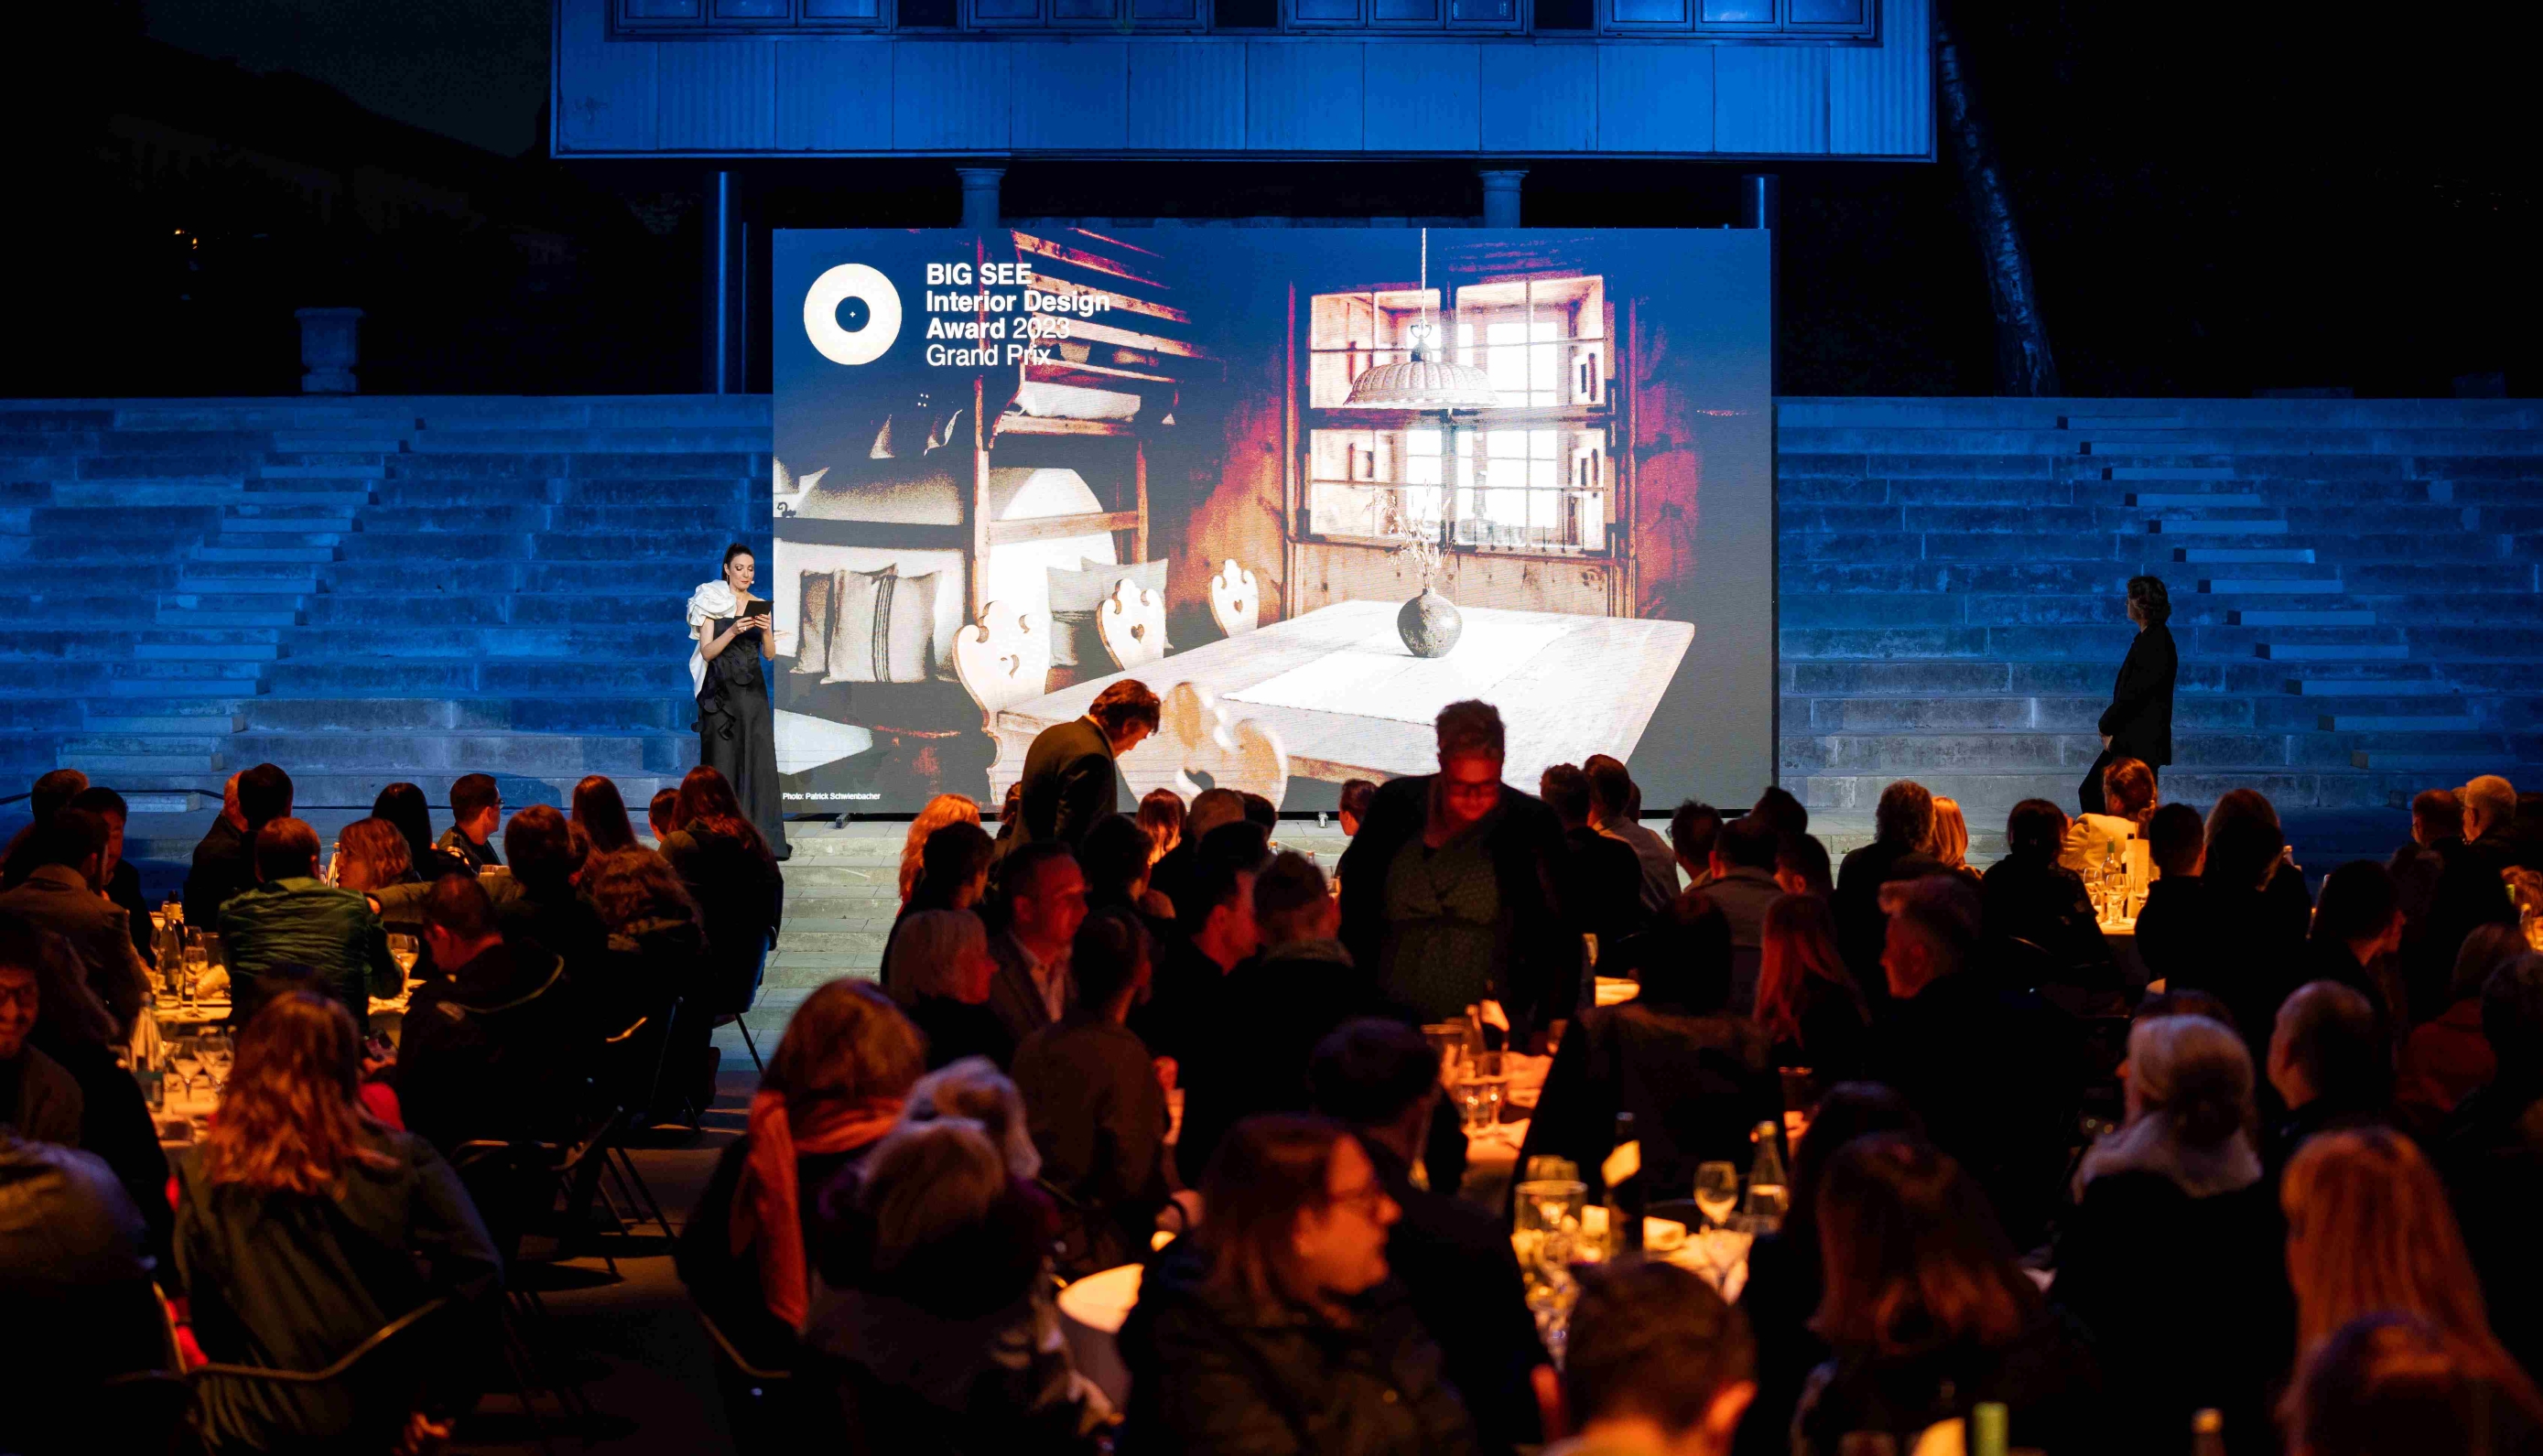 V Ljubljano prihaja največji arhitekturni dogodek leta – festival BIG Arhitektura